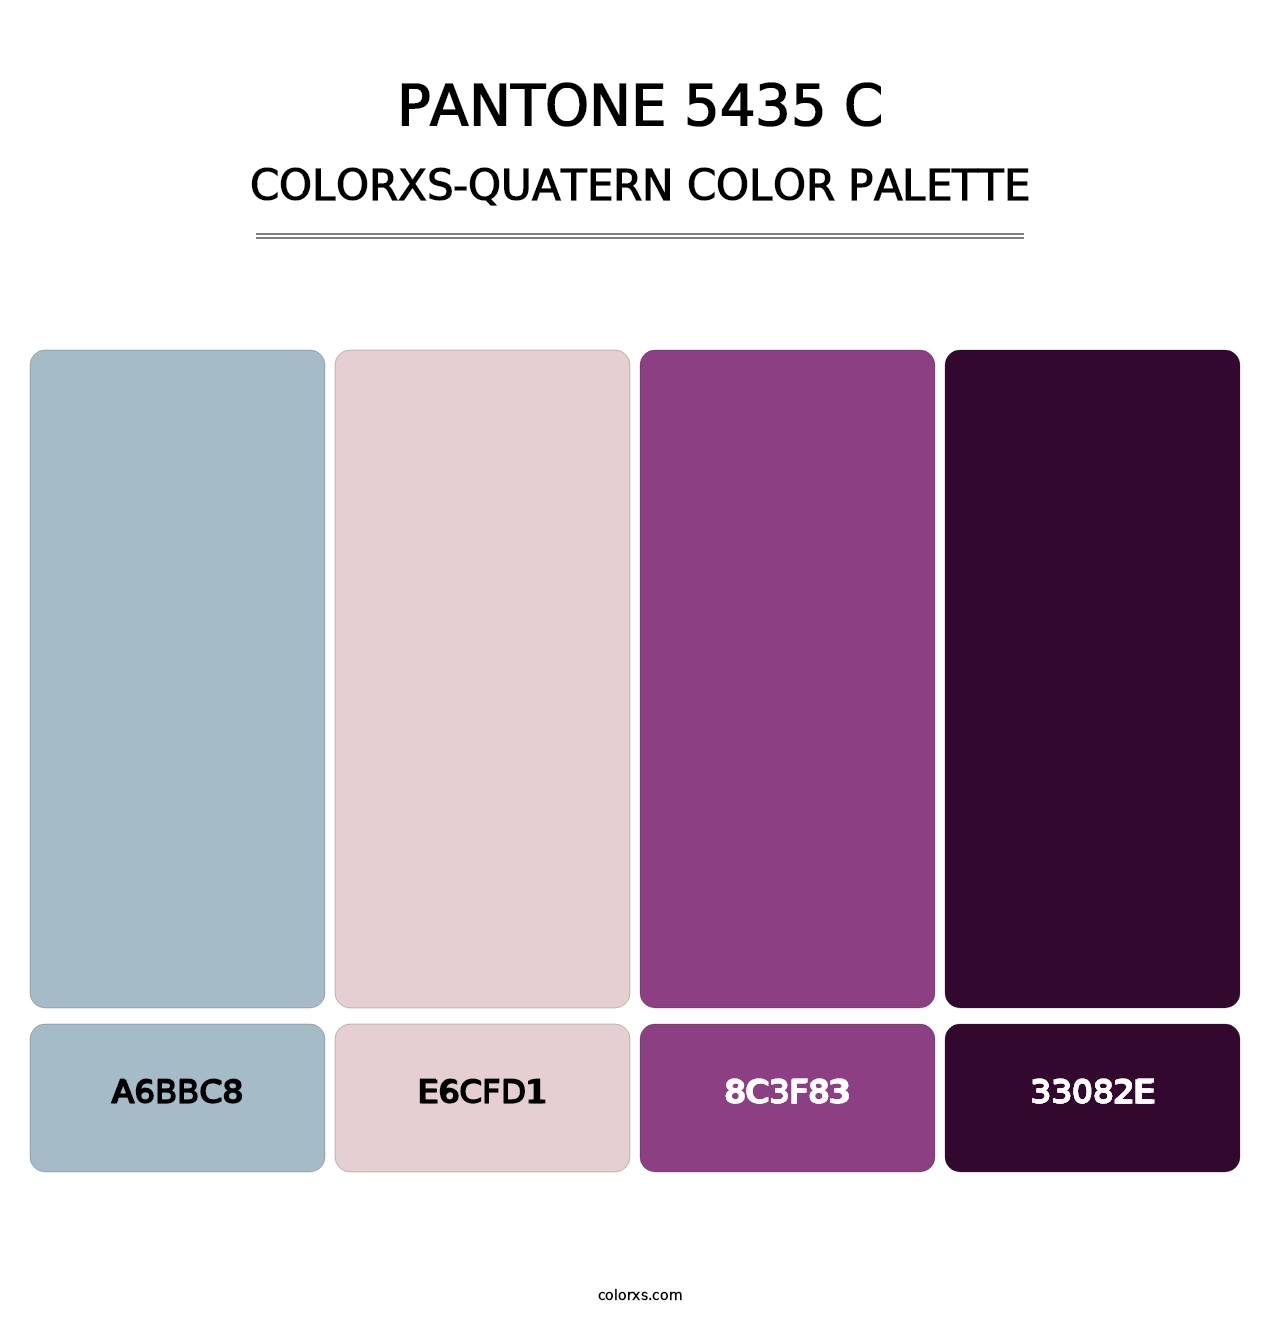 PANTONE 5435 C - Colorxs Quatern Palette